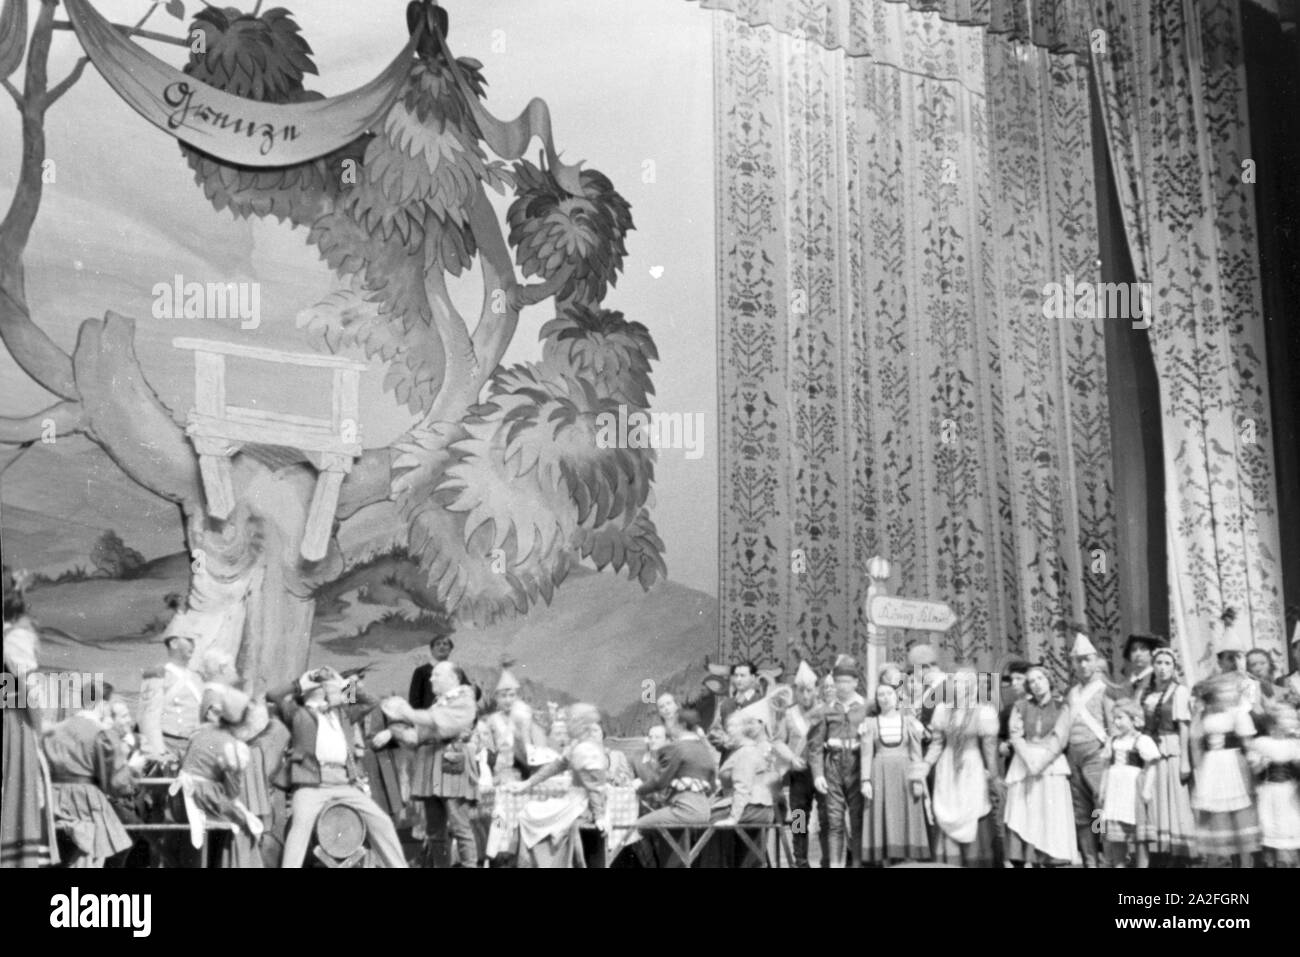 Das aufwendig gestaltete Bühnenbild und die zahlreichen Schauspieler während eines Theaterstücks für Kinder, Deutschland 1930er Jahre. The lavishly designed stage set and the numerous actors during a children´s theatre play, Germany 1930s. Stock Photo